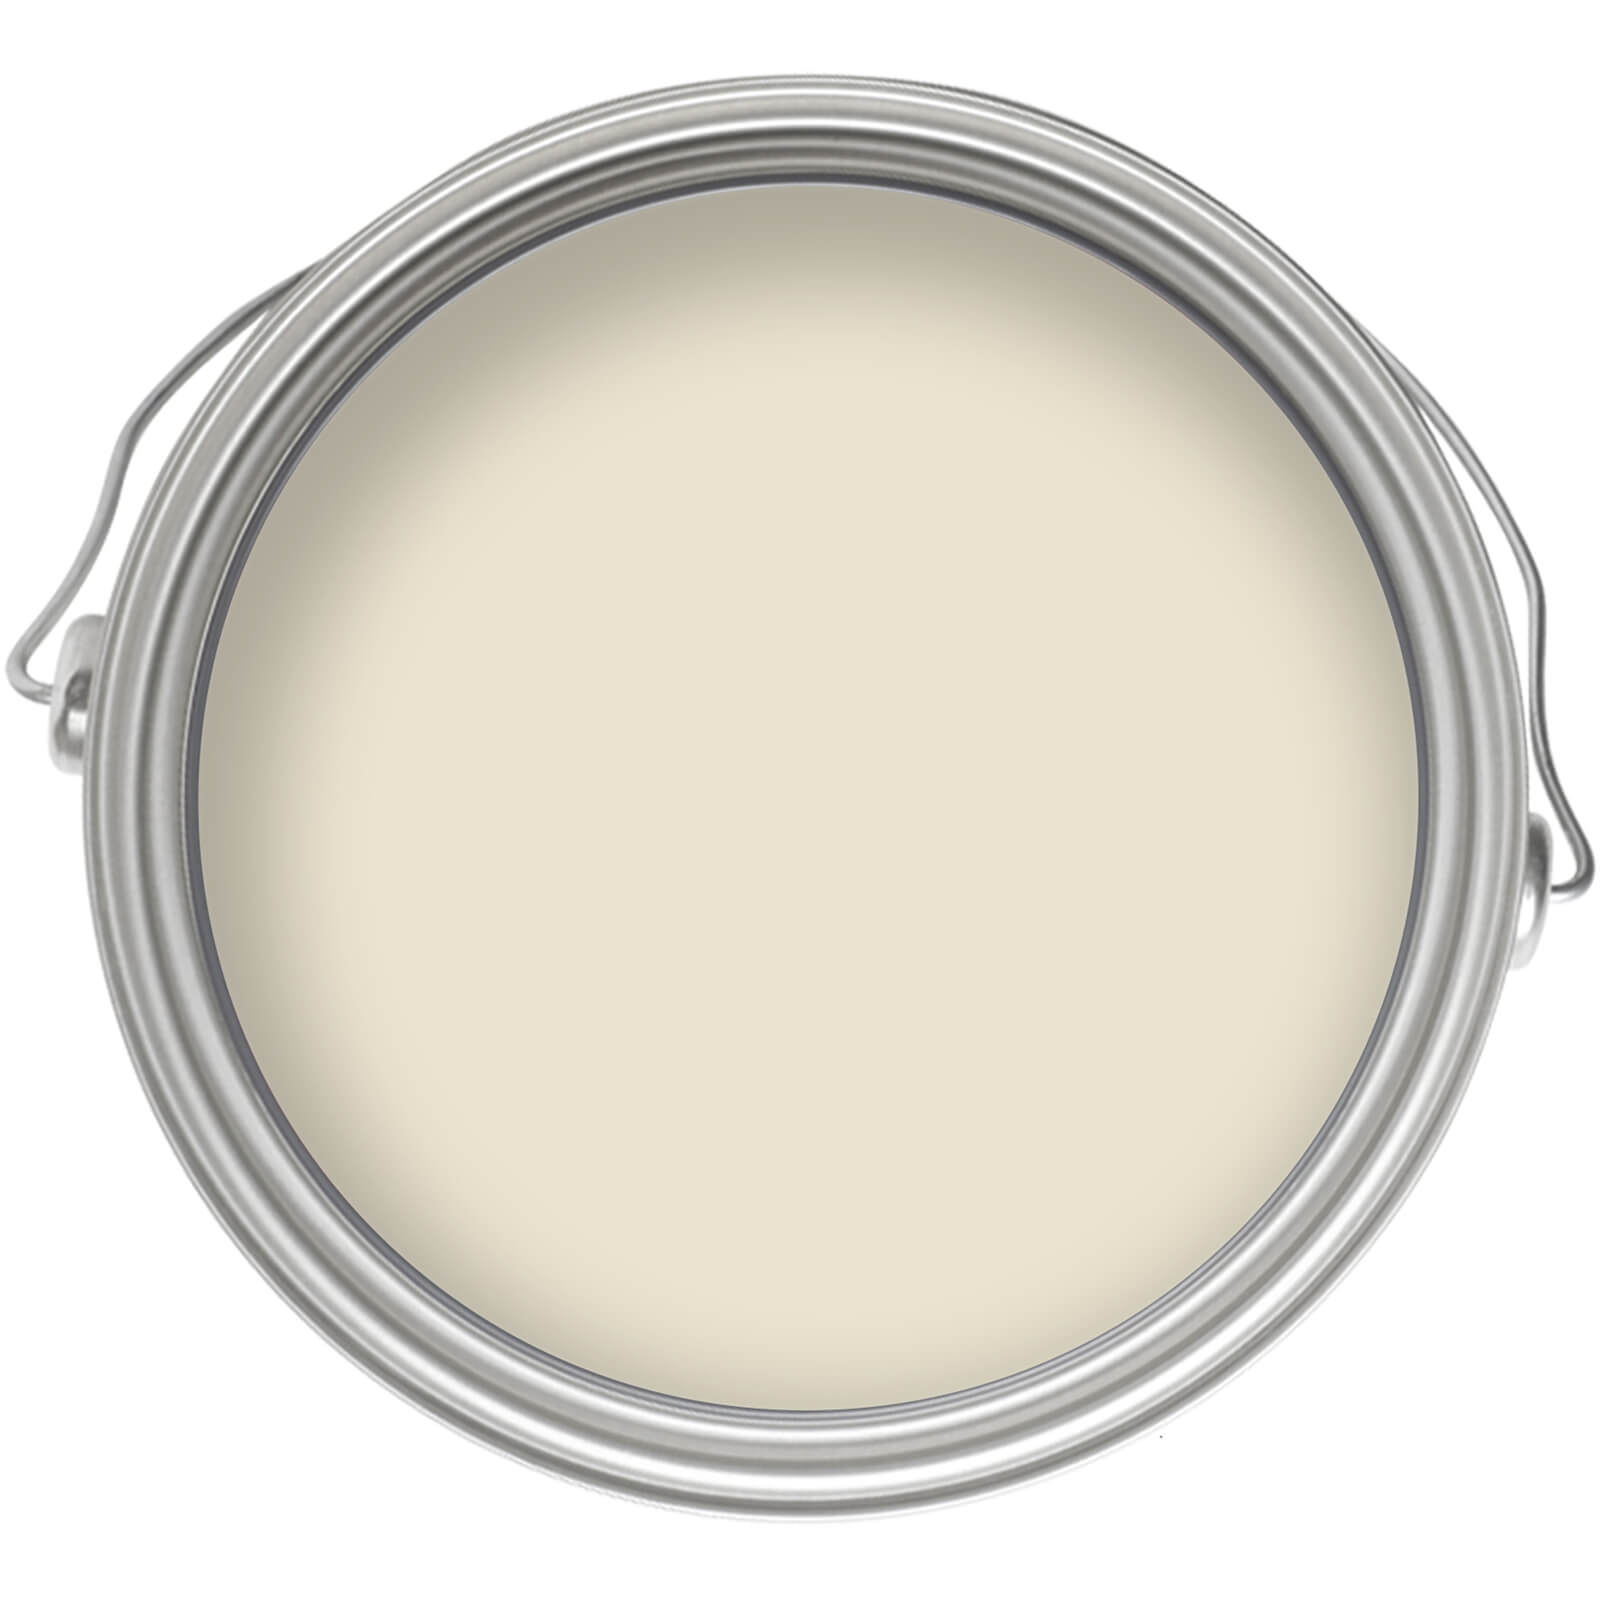 Homebase Matt Emulsion Paint Vanilla Cream - 2.5L